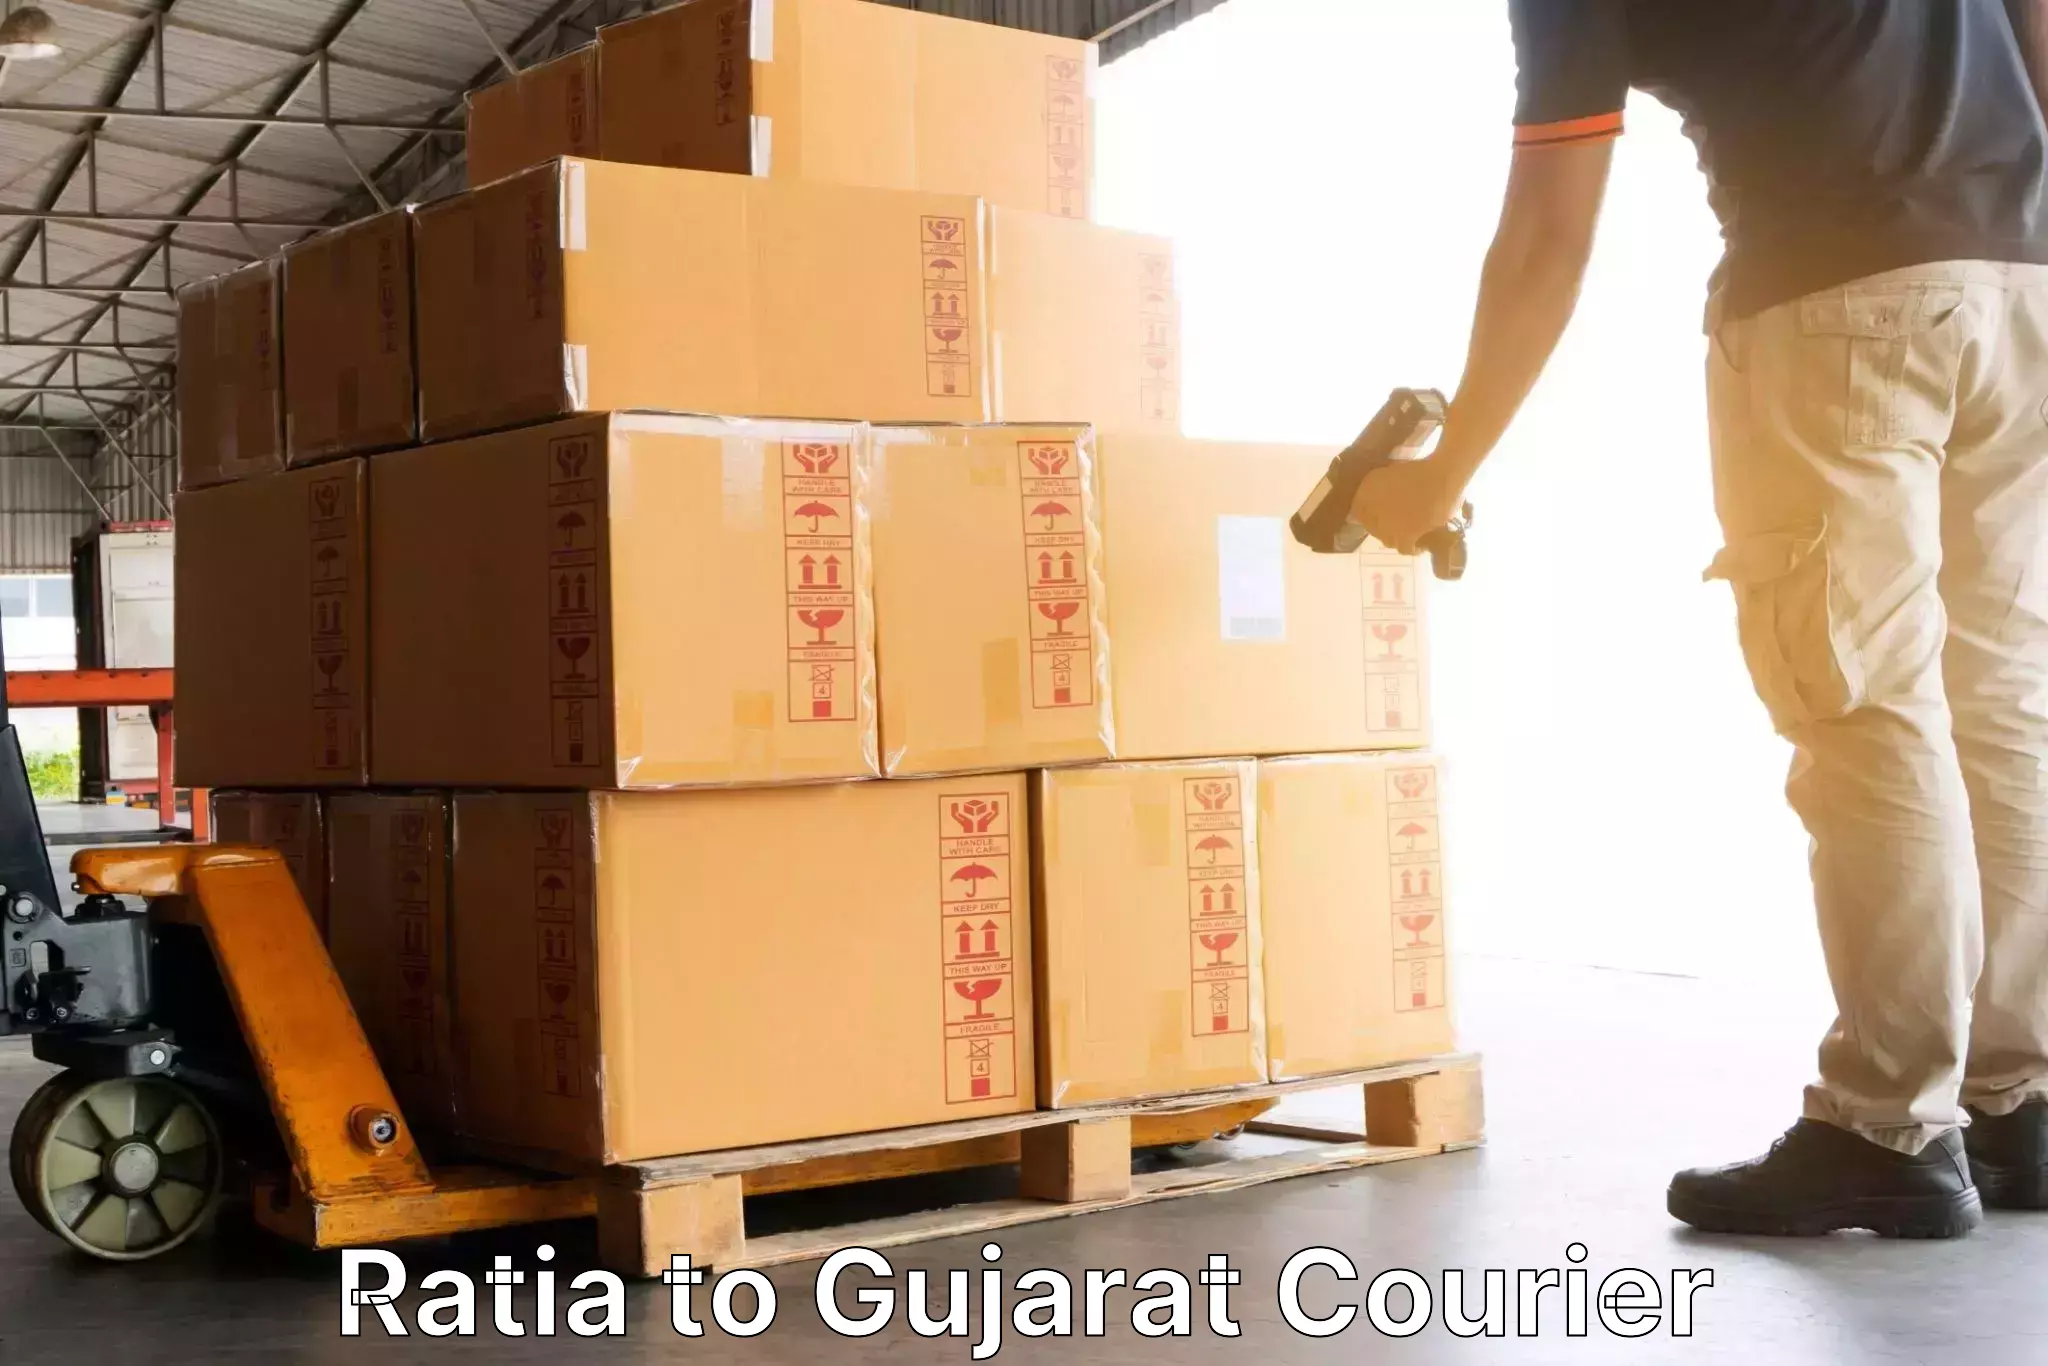 Courier service booking Ratia to Narmada Gujarat